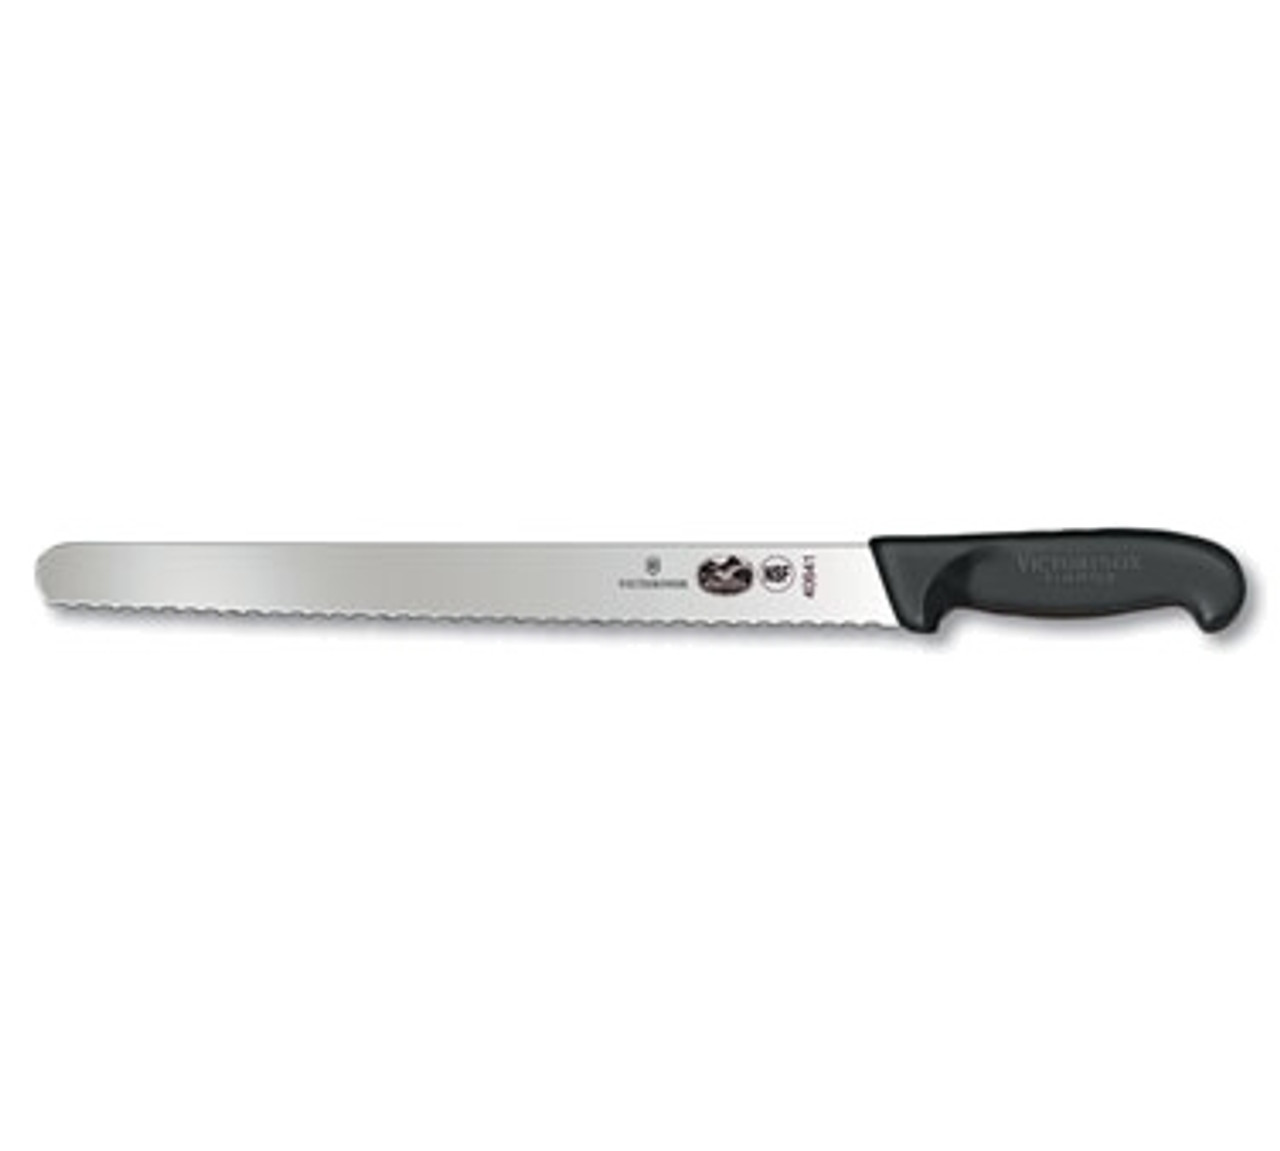 Victorinox 5.4233.30 12" Slicer with Wavy Blade - Black Fibrox Handle